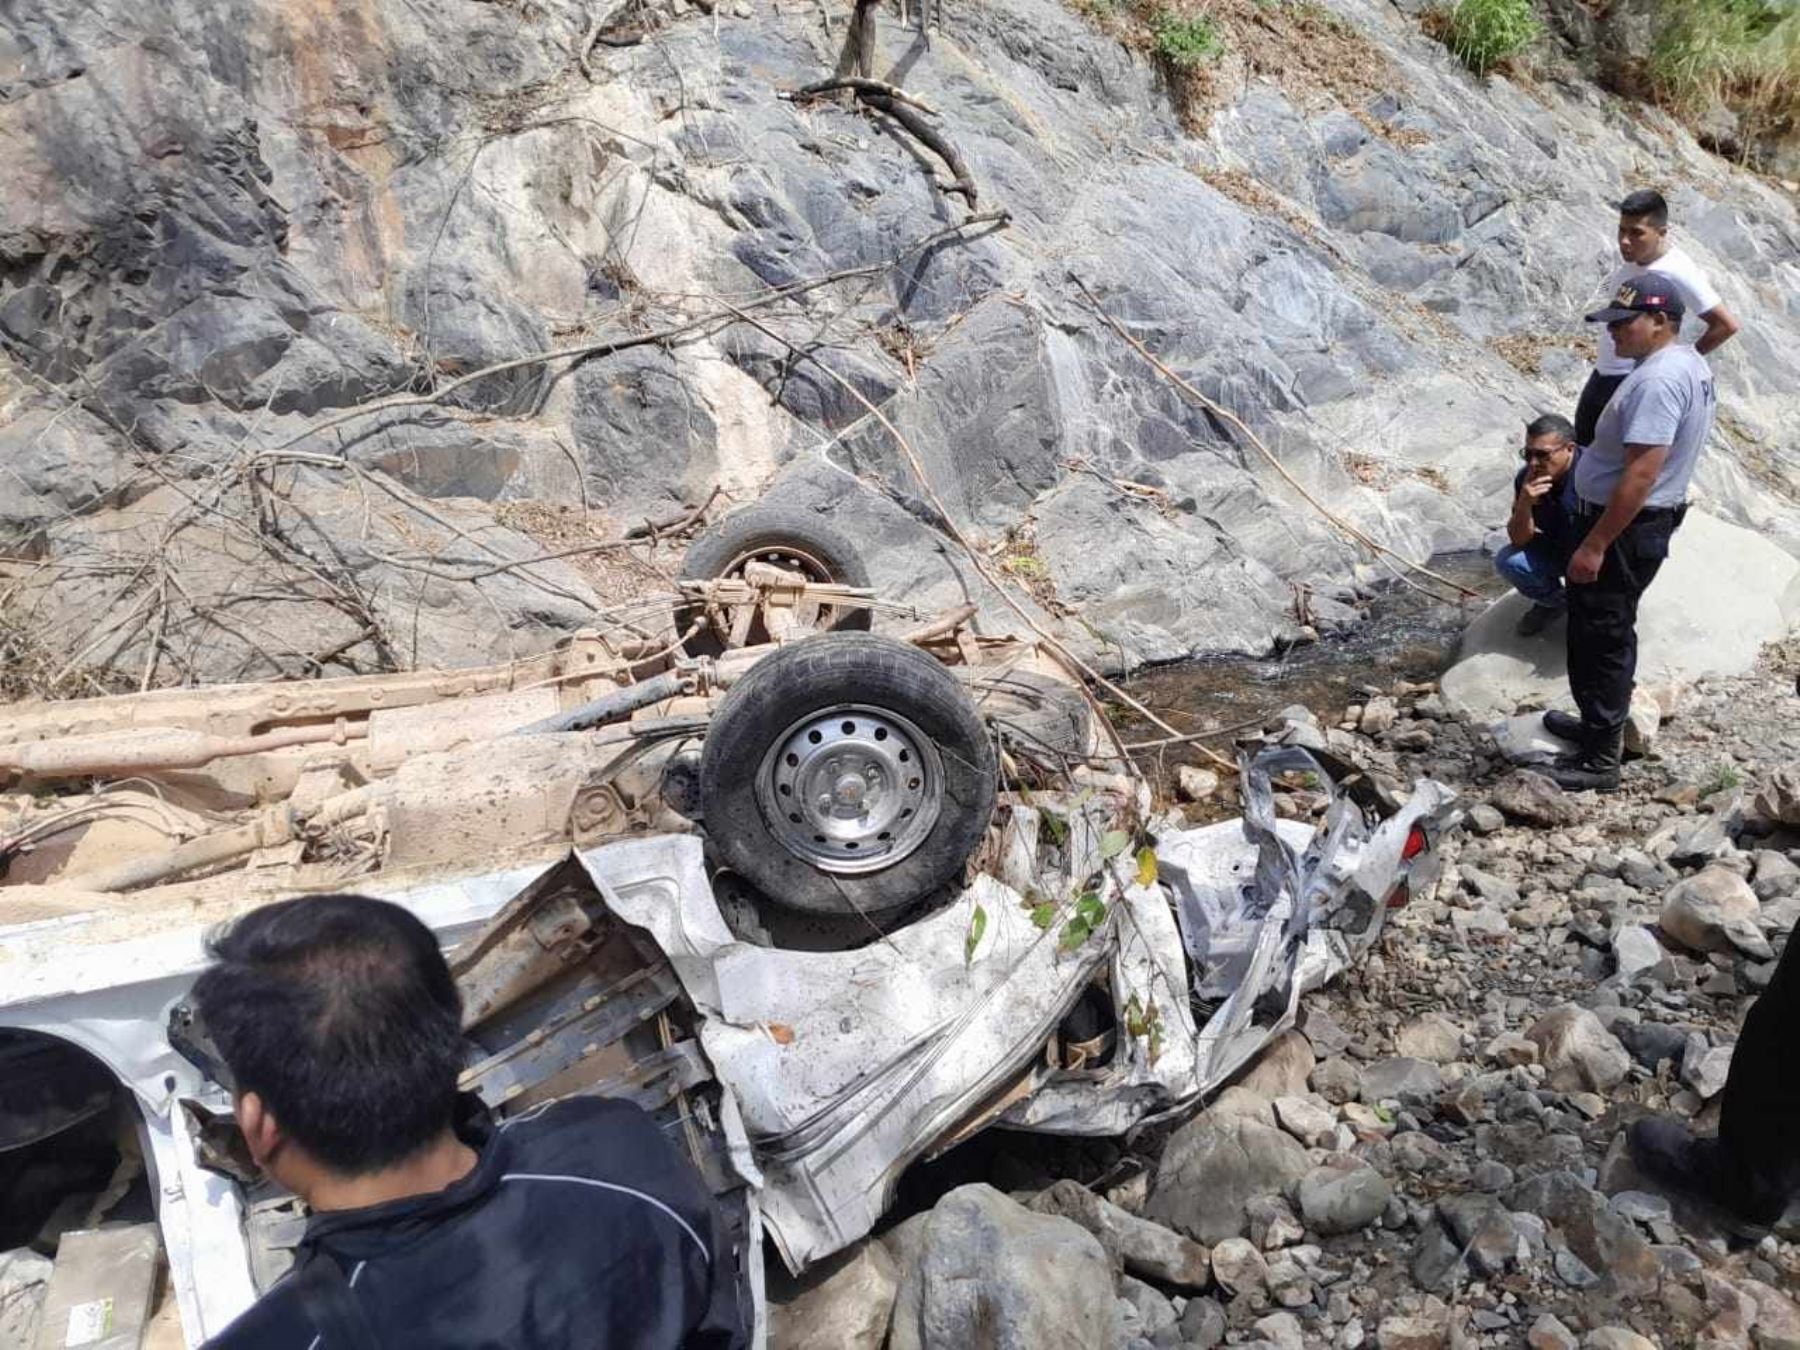 Cinco personas murieron hoy en Contumazá, Cajamarca, luego que la combi en que viajaban cayera a un abismo de más de 200 metros. Foto cortesía: Despierta Contumazá/Facebook